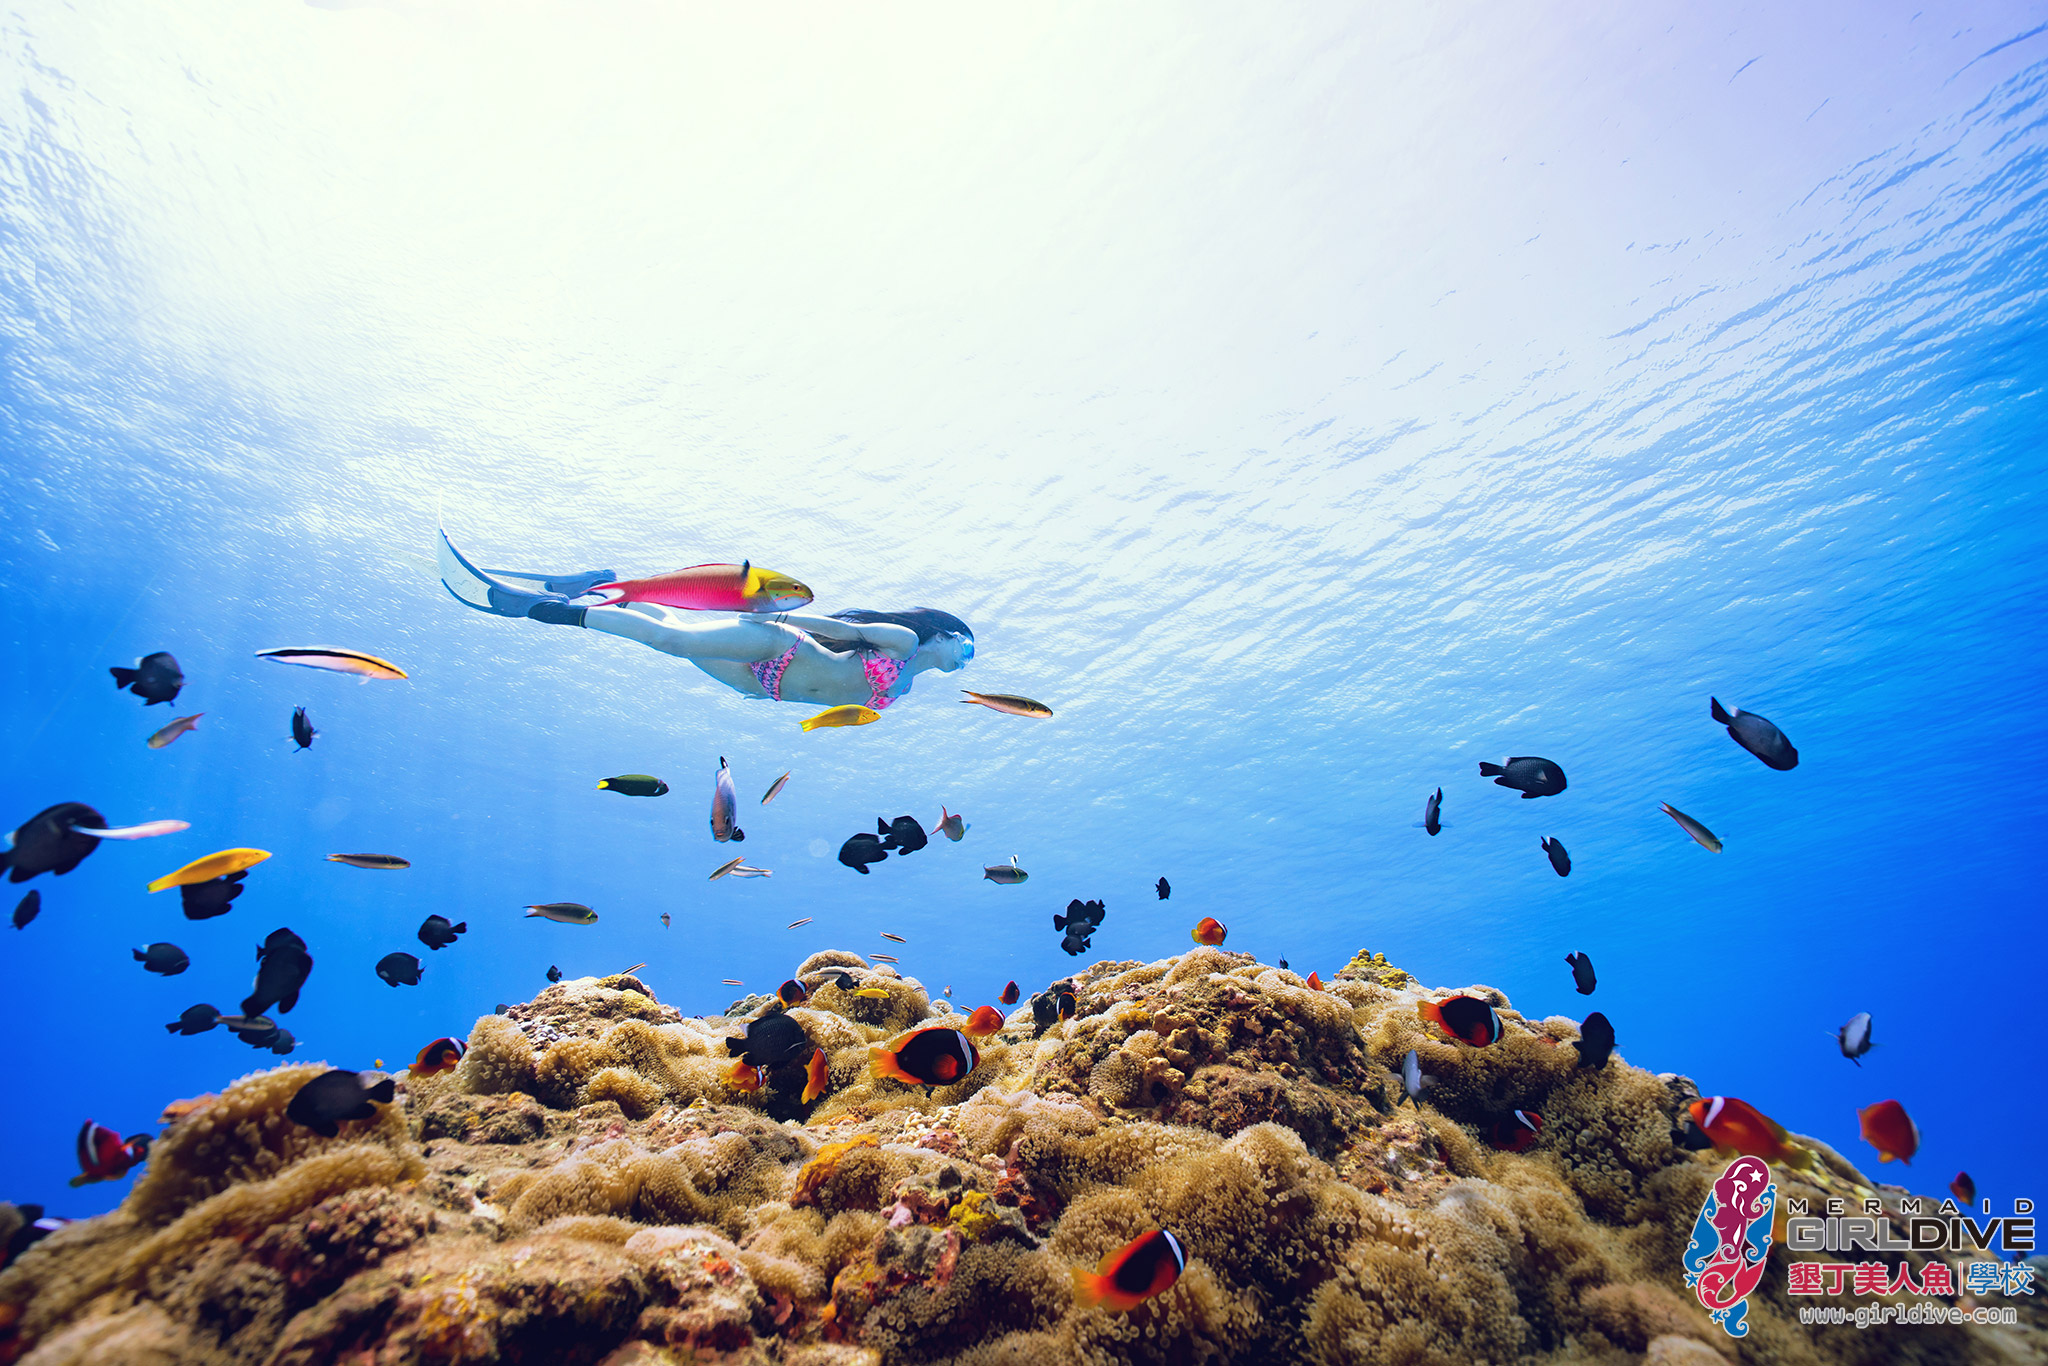 海人迷,自由潛水,水中攝影,潛水旅遊,國內旅遊